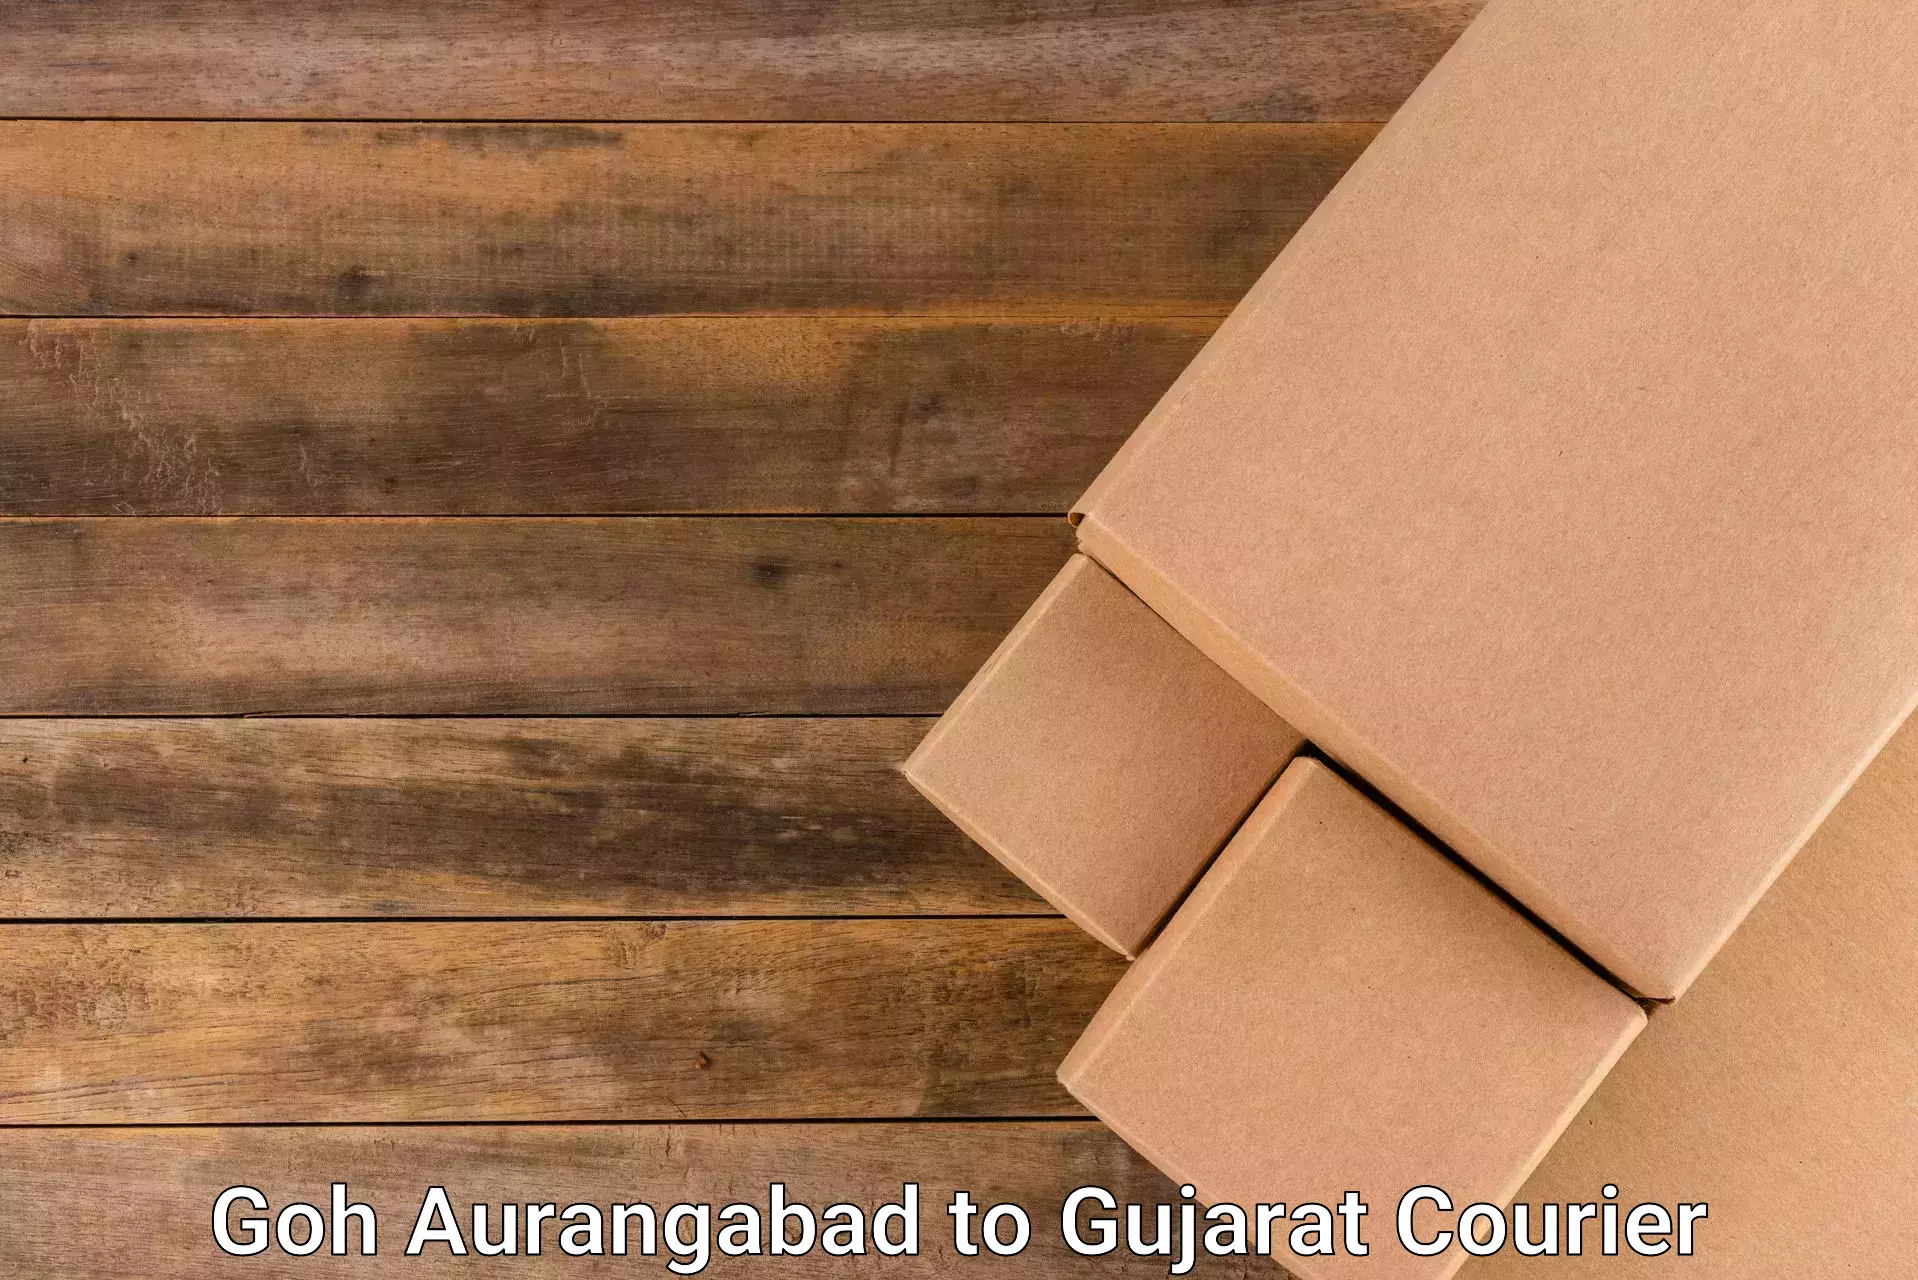 Customized delivery solutions Goh Aurangabad to Bardoli